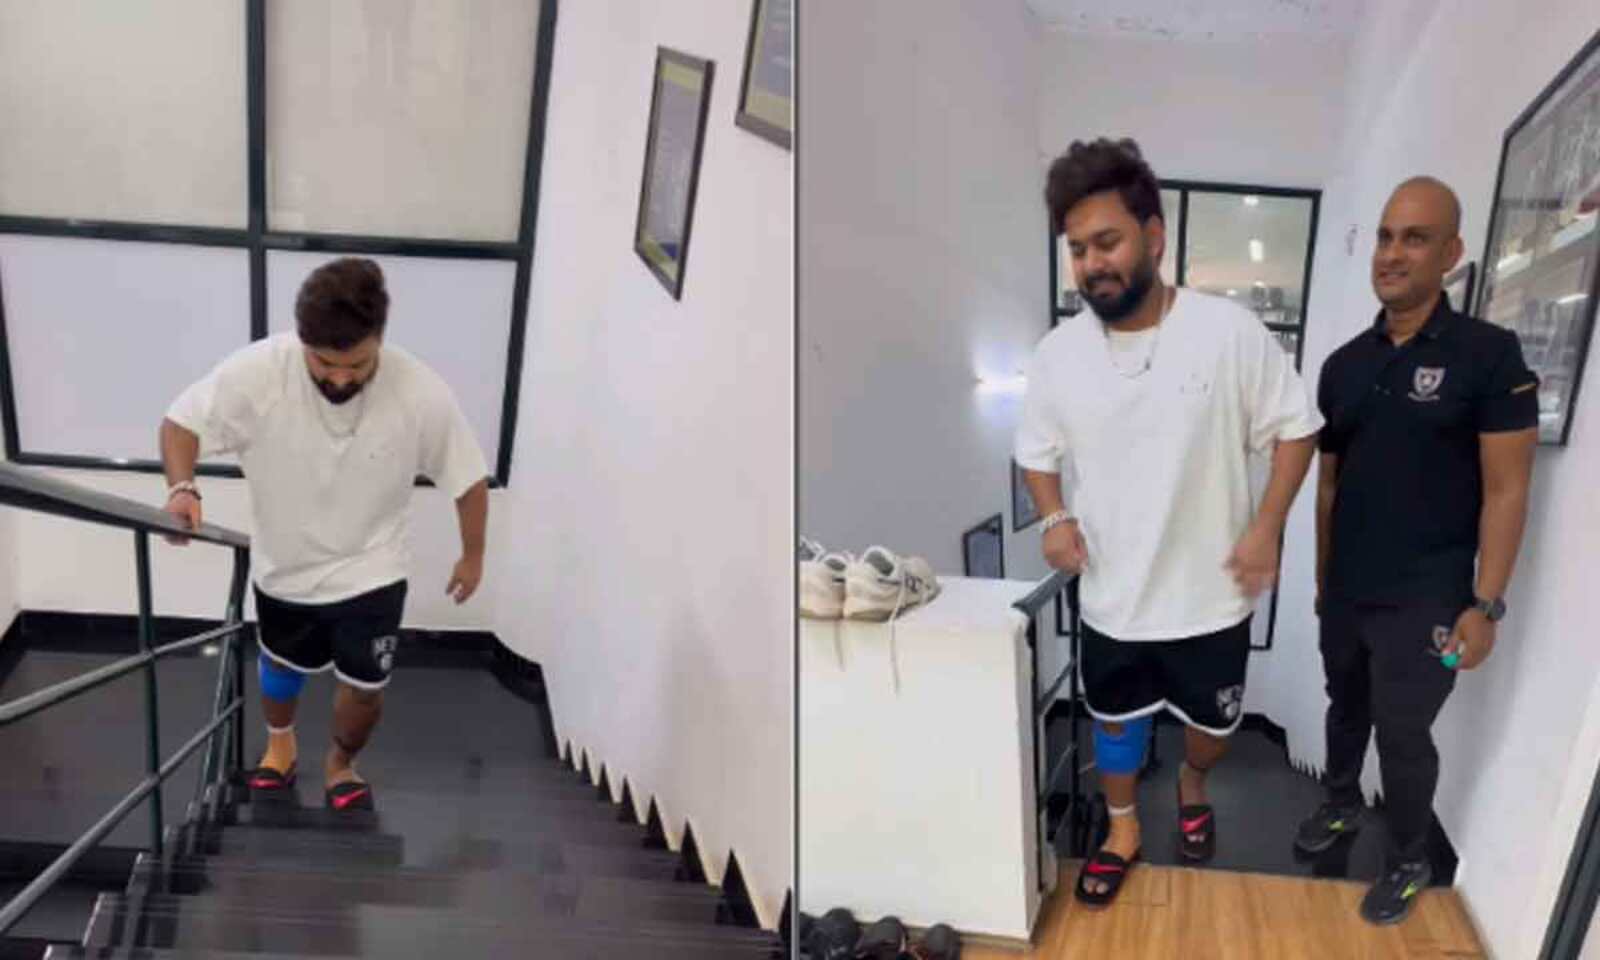 ऋषभ पंत की तबियत में हुआ काफी सुधार, बिना किसी सहारे के सीढ़ियां चढ़ते हुए आए नजर Rishabh Pant's health improved a lot, was seen climbing stairs without any support